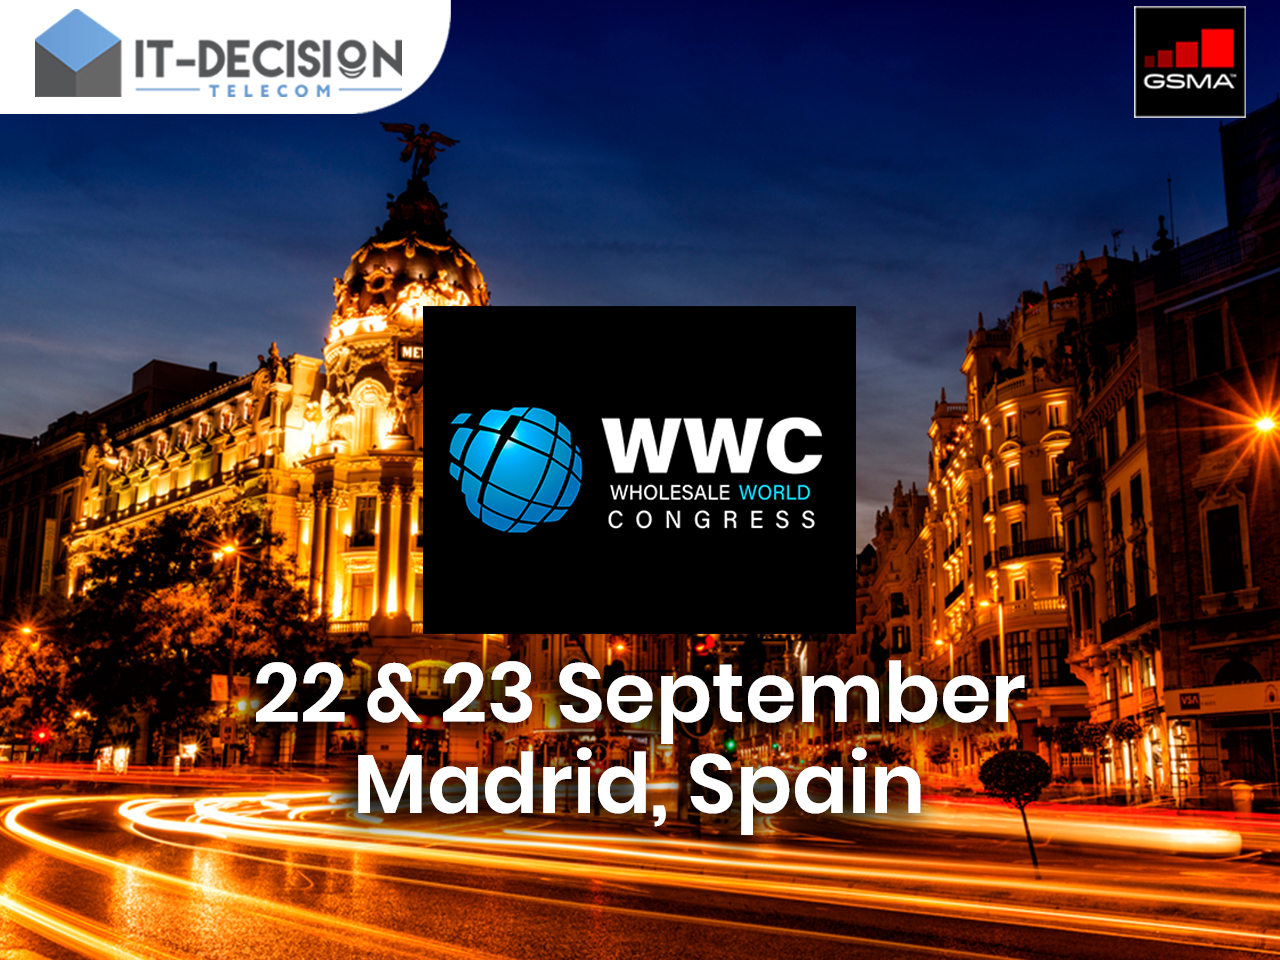 22 - 23 September! Meet ITD Telecom at WWC 2021!